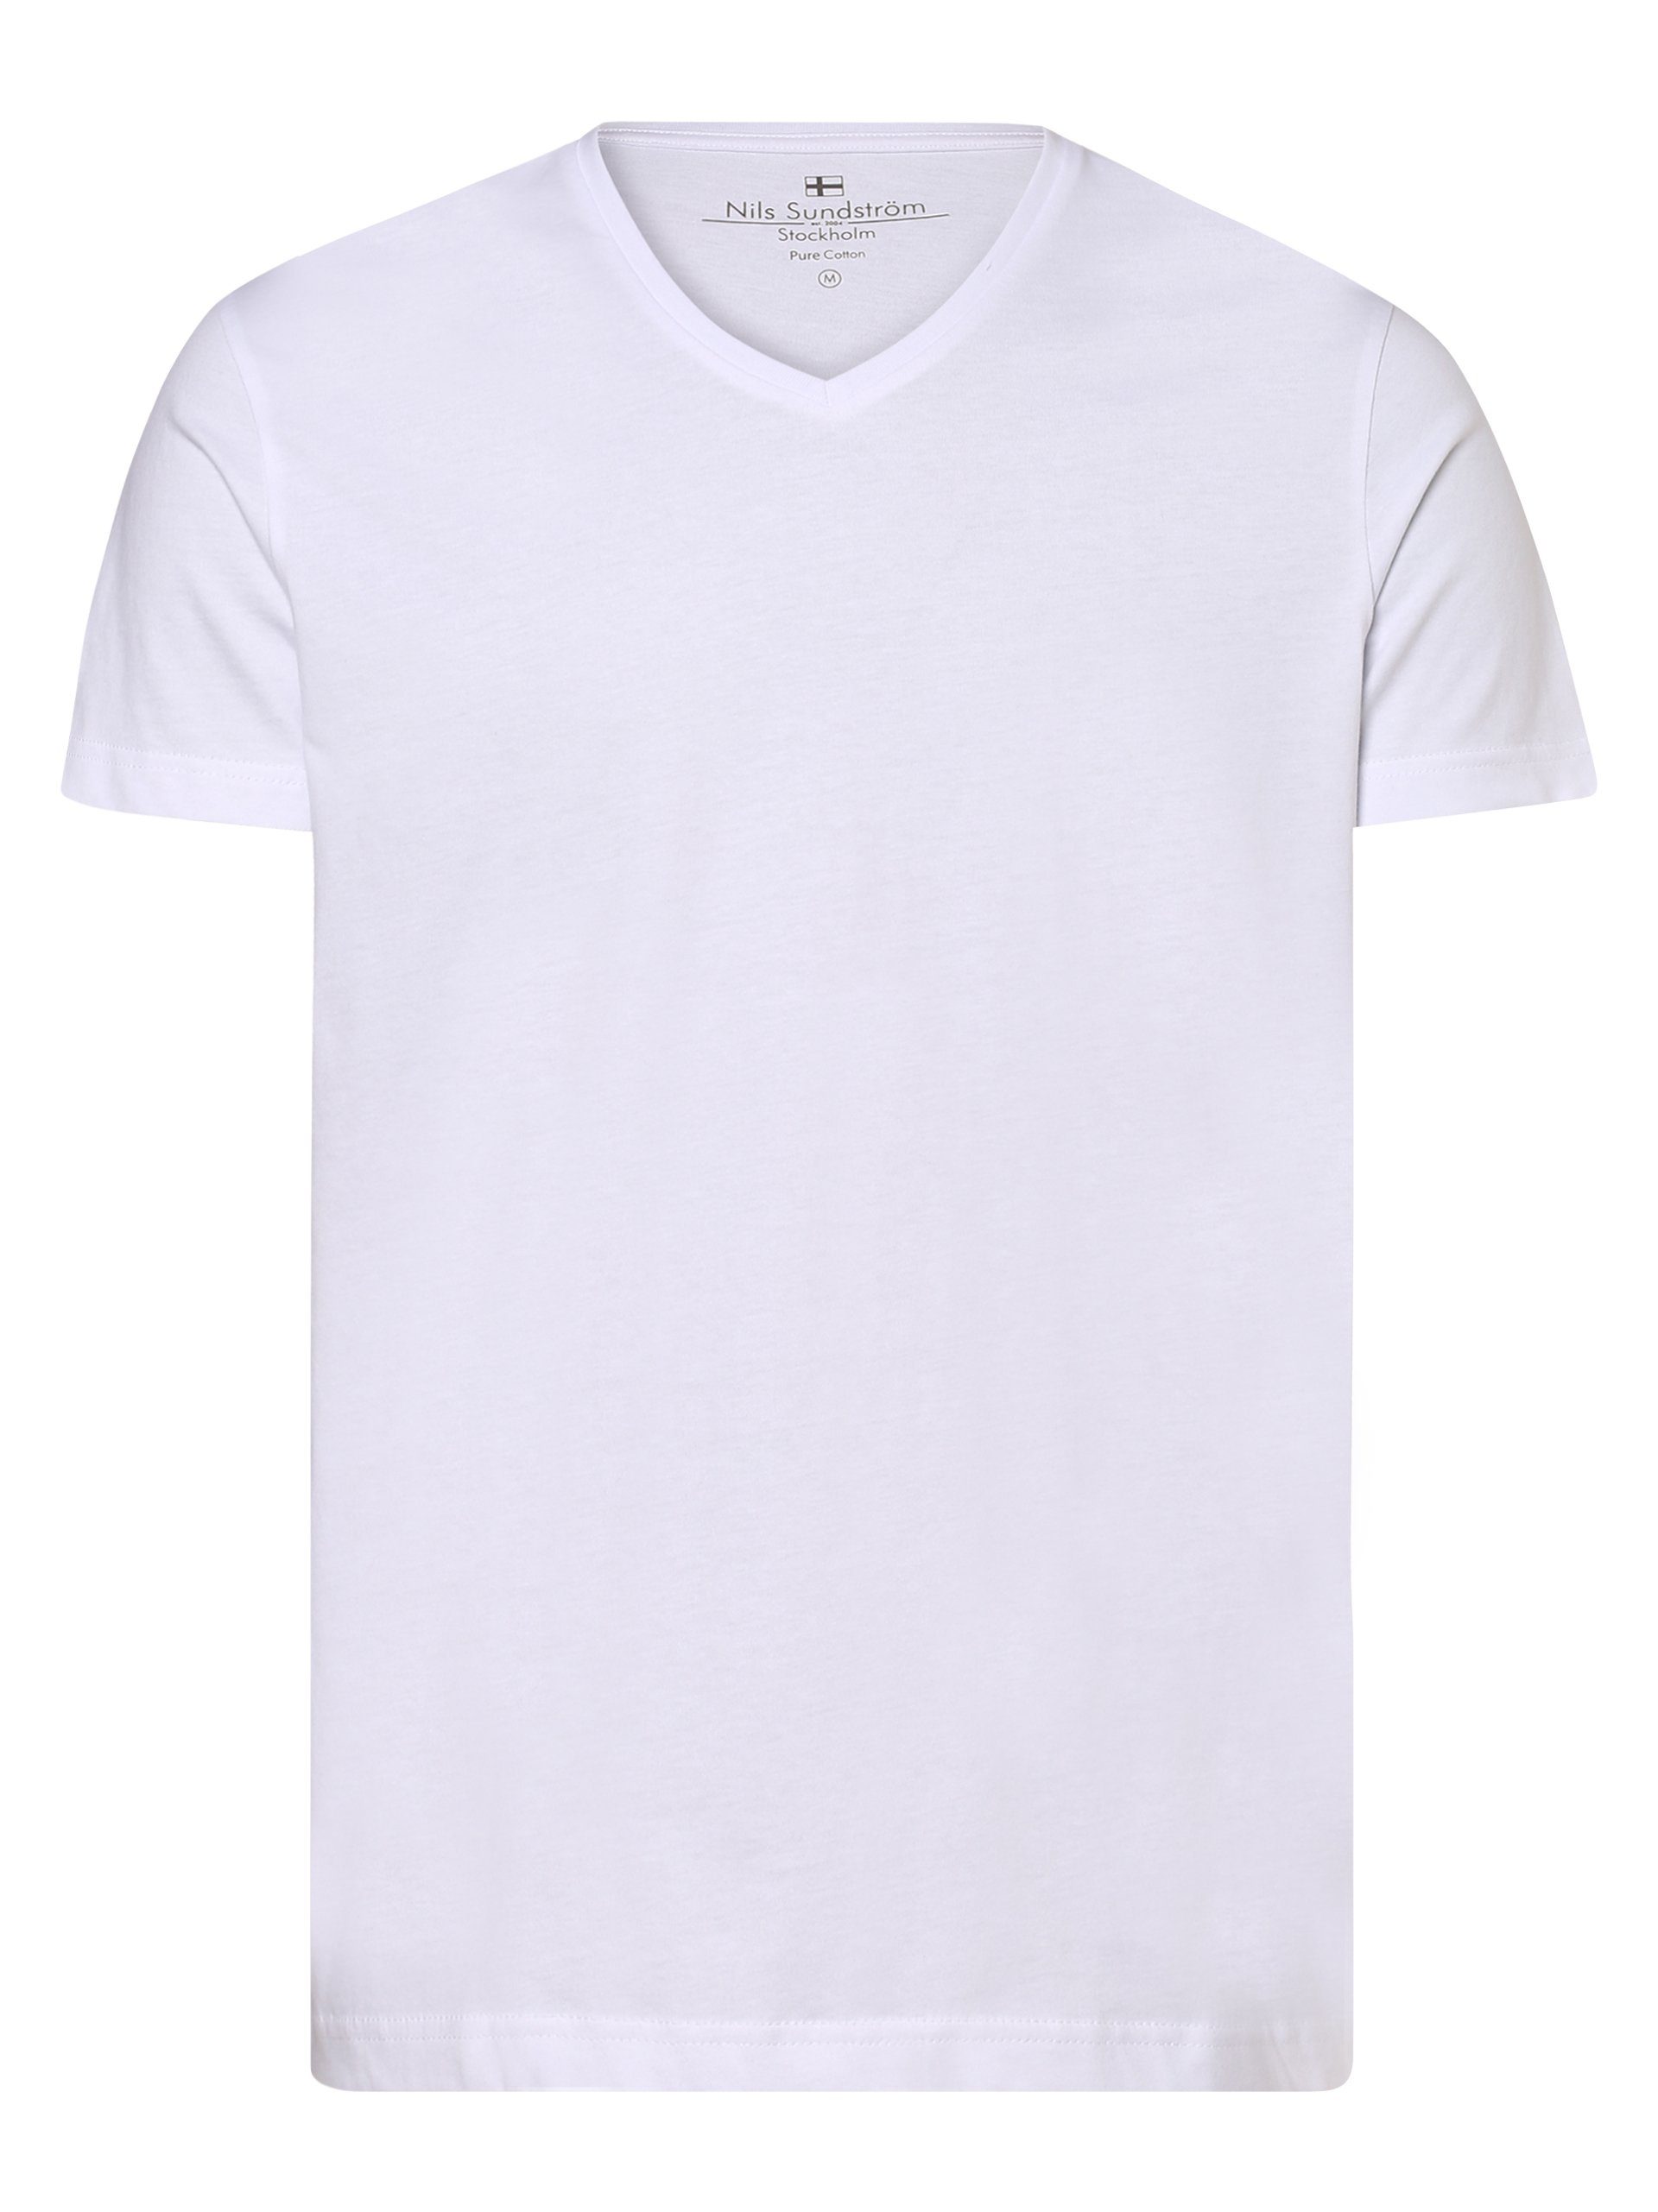 Nils Sundström T-Shirt weiß | V-Shirts